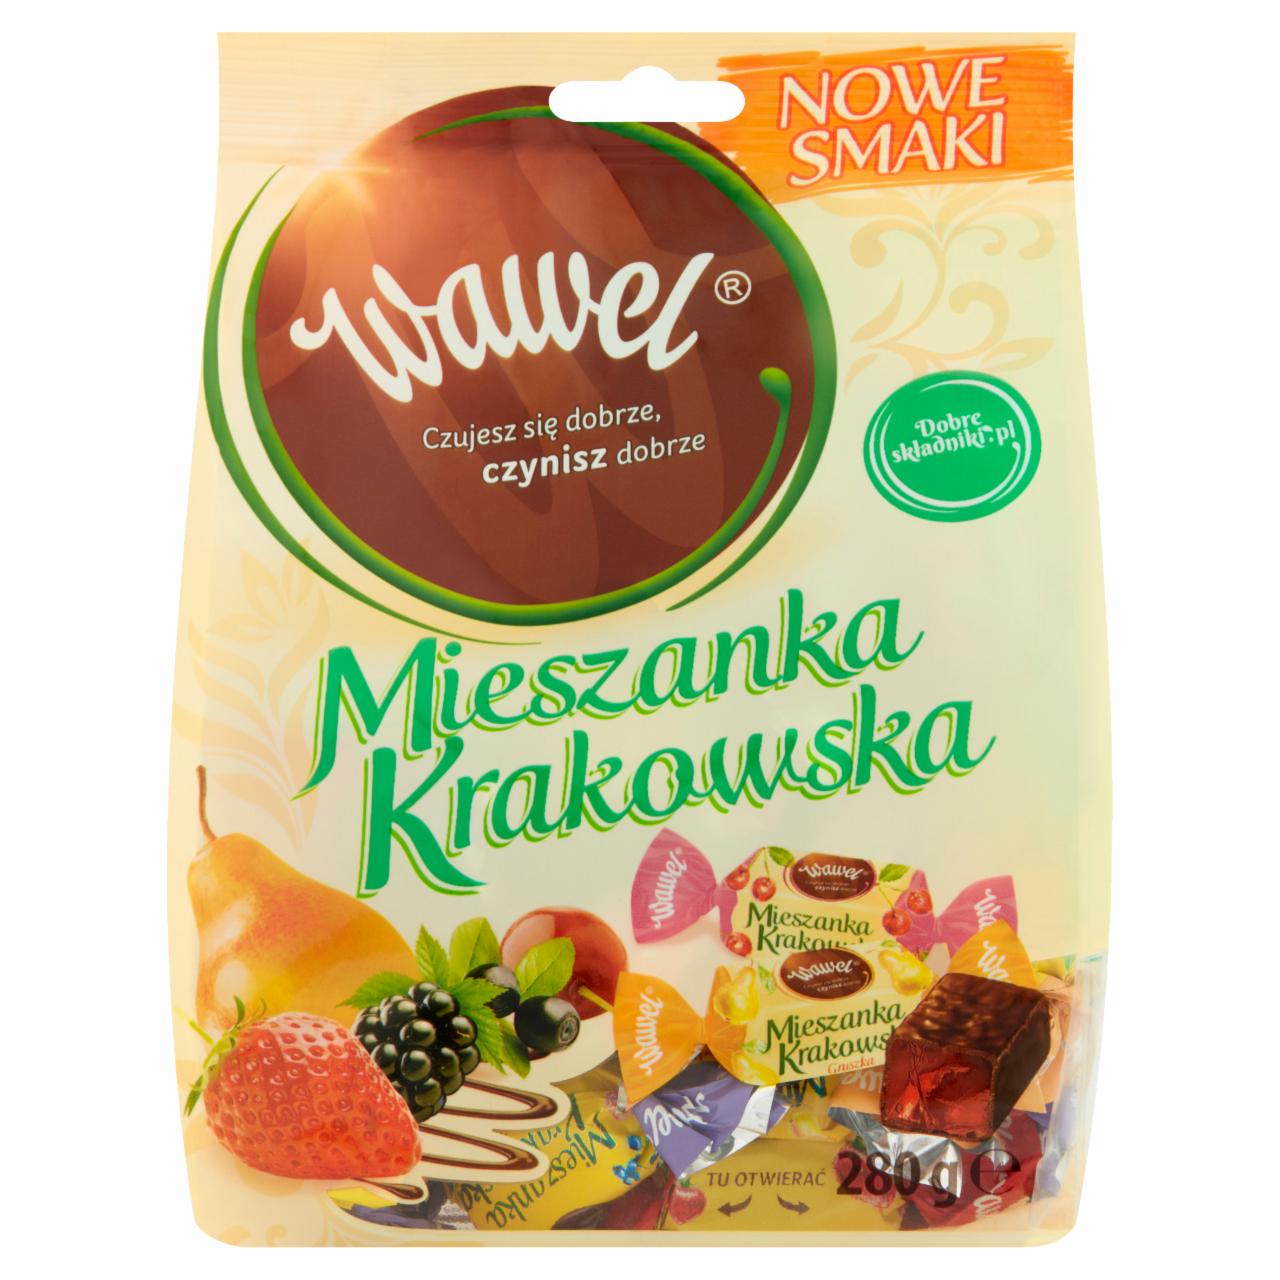 Zdjęcia - Wawel Mieszanka Krakowska Nowe Smaki Galaretki w czekoladzie 280 g